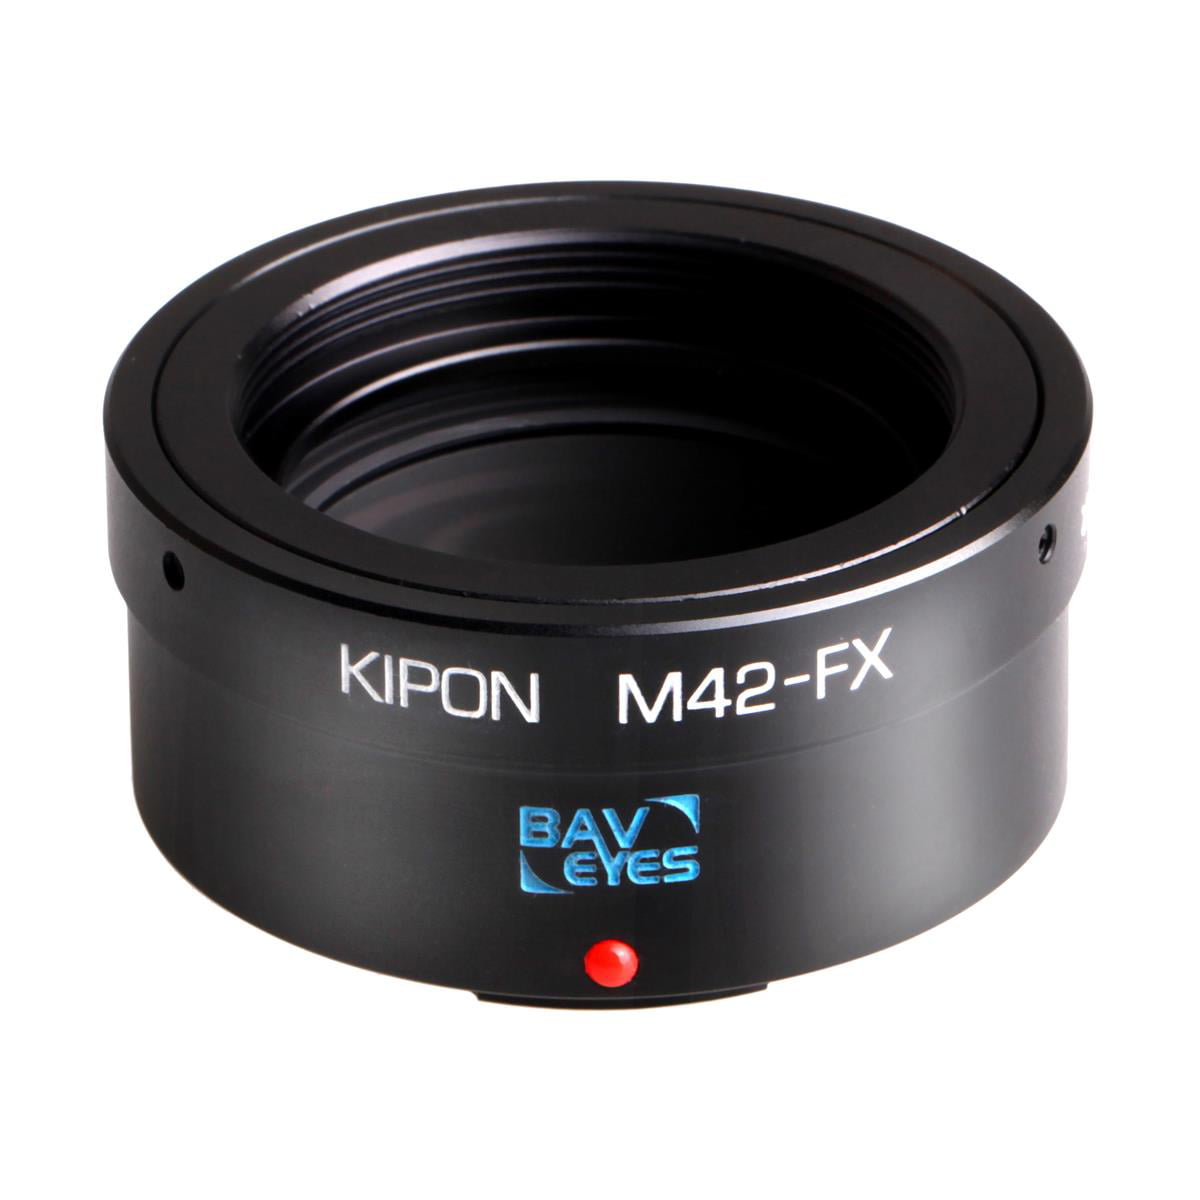 Meer dan wat dan ook hartstochtelijk ei Kipon Baveyes 0.7x Mark2 Lens Mount Adapter for M42 Lens to FUJIFILM  FX-Mount Camera - Walmart.com